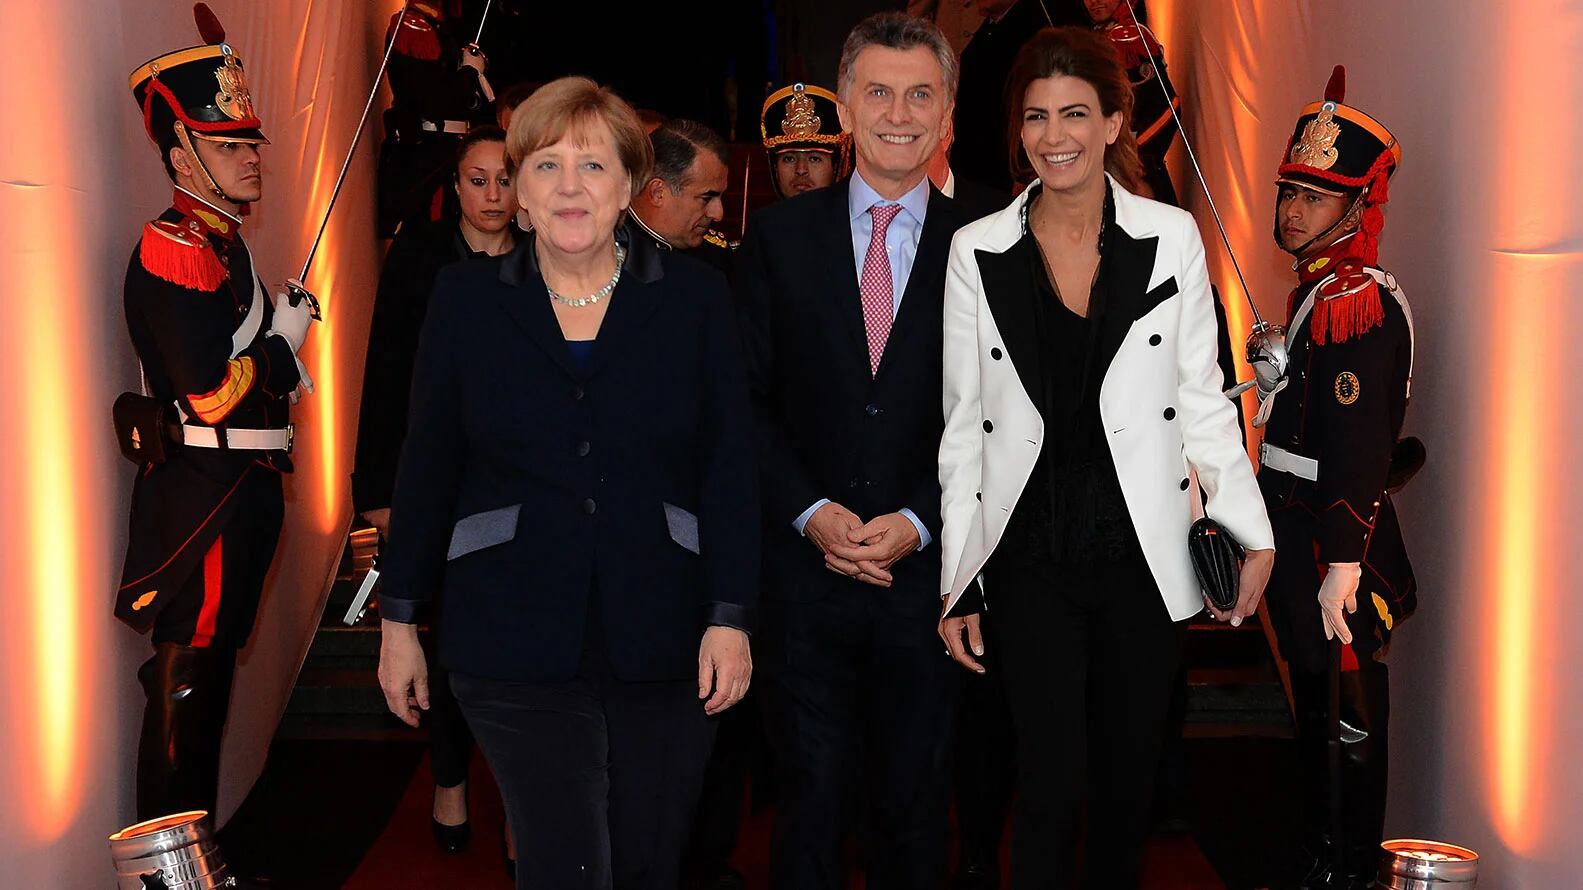 El presidente Mauricio Macri y la primera dama, Juliana Awada, junto a la canciller alemana, Angela Merkel, durante la cena de gala que se llevó a cabo en el Centro Cultural Kirchner